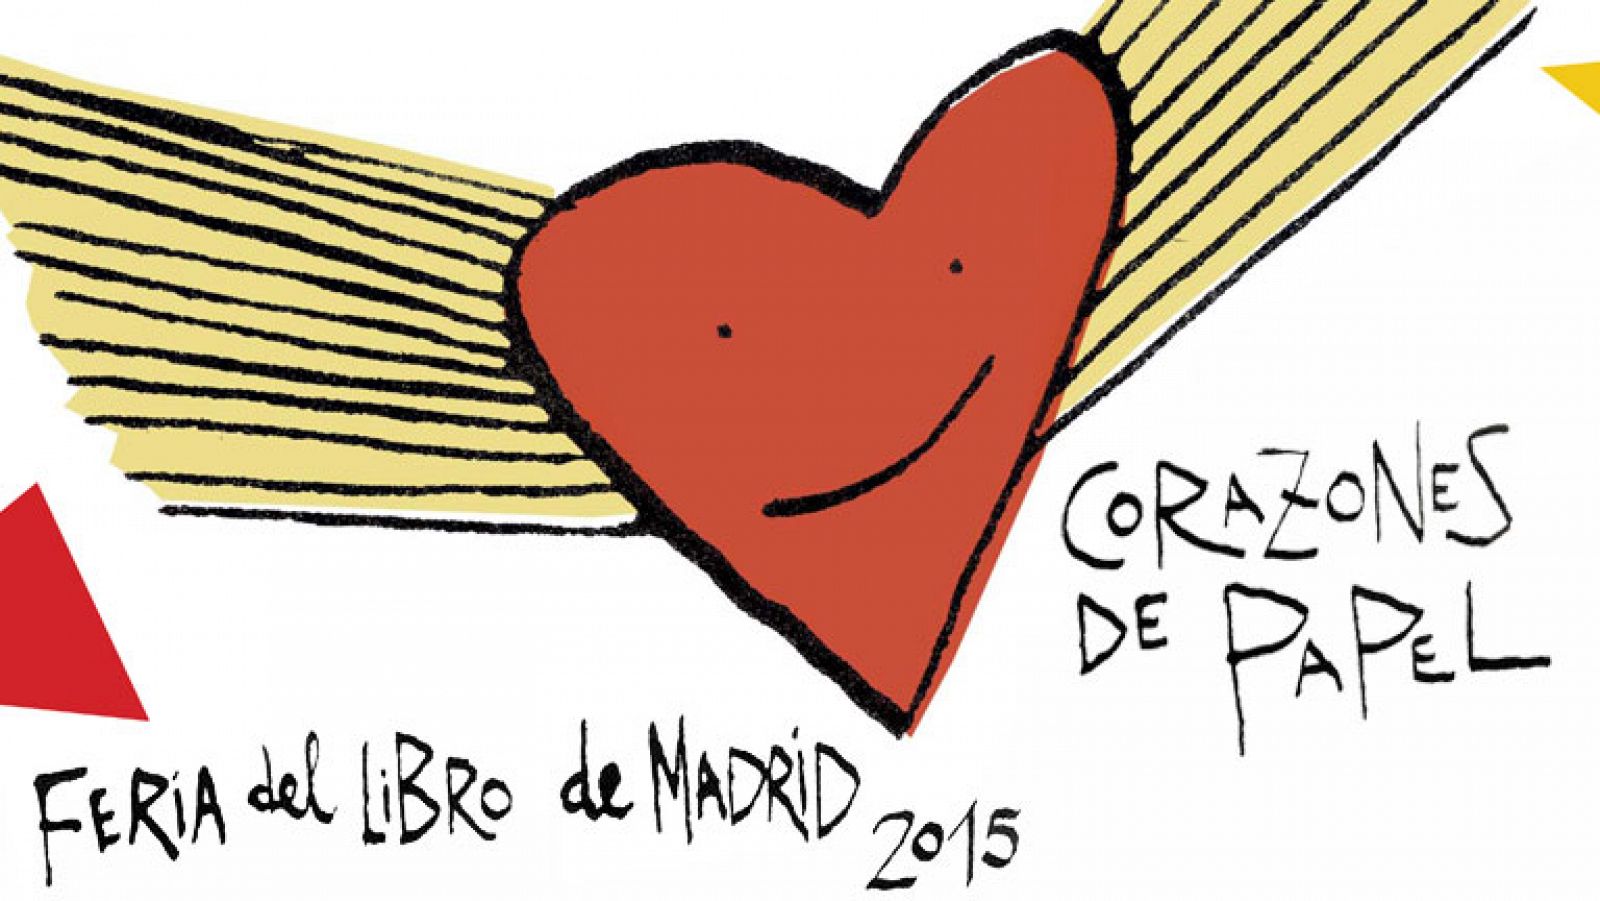 Feria del Libro de Madrid 2015 - 'Corazones de papel' en el Pabellón Infantil